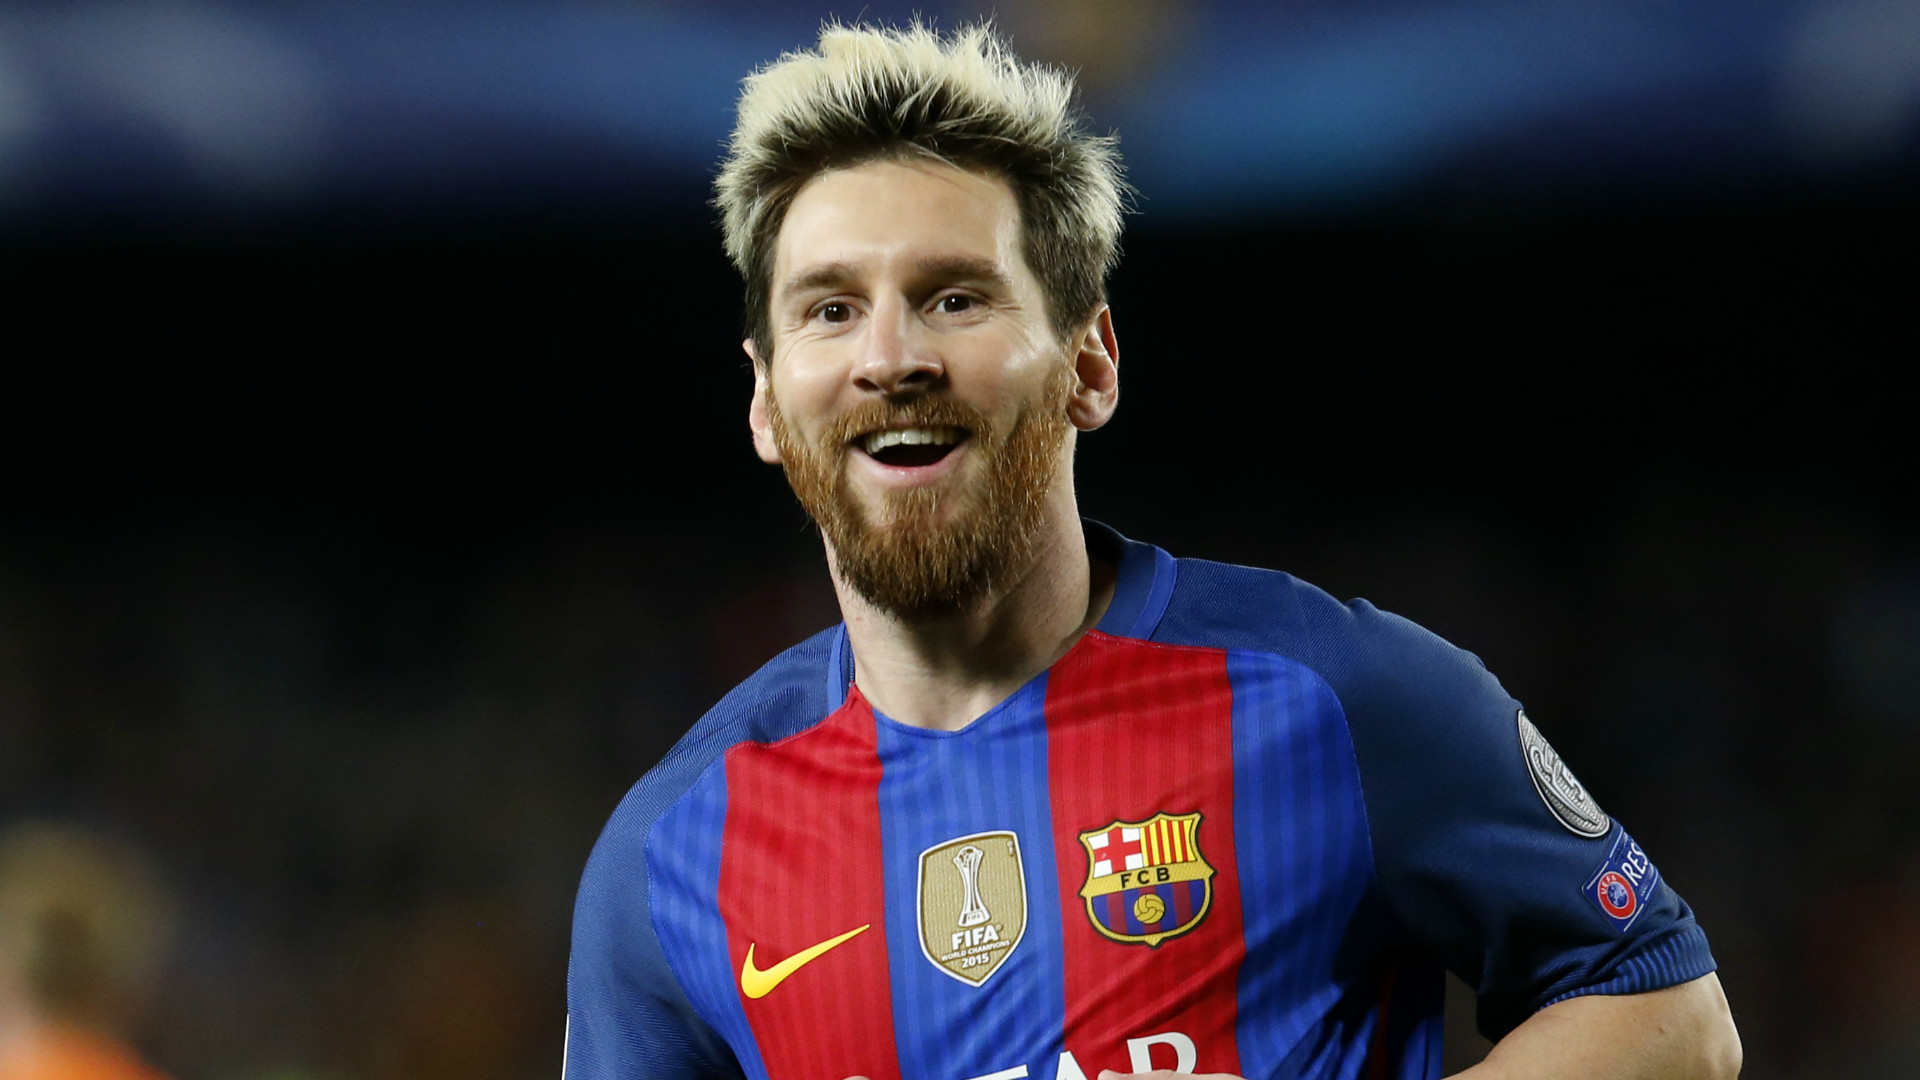 Messi vĩ đại nhất - Bạn có bao giờ thắc mắc tại sao Messi được mệnh danh là vĩ đại nhất? Hãy xem hình ảnh mới nhất của anh ta để tìm hiểu thêm về tài năng, trí tuệ và khả năng lãnh đạo huyền thoại của Messi.